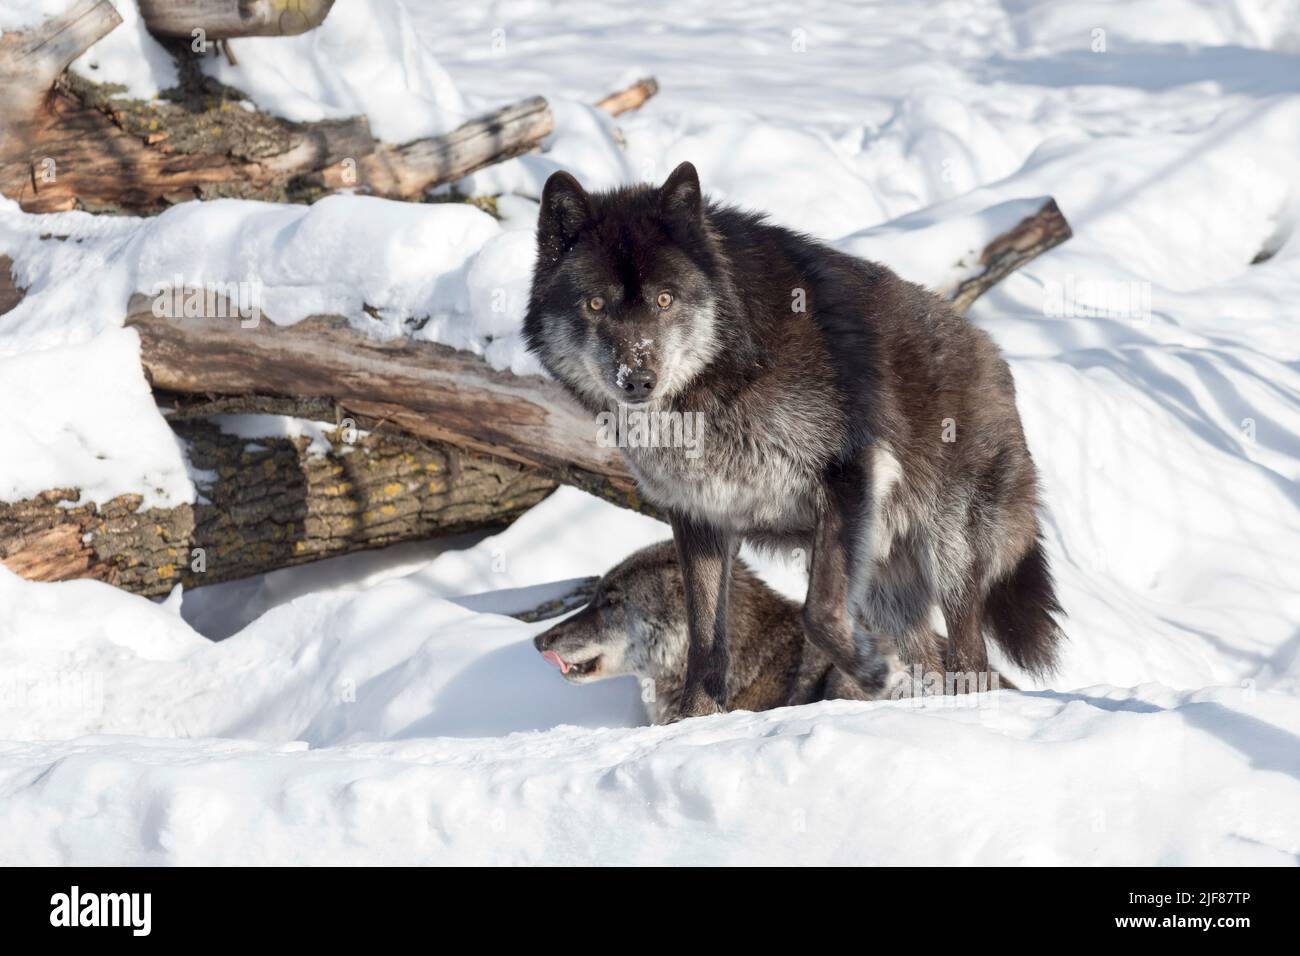 Il lupo canadese nero selvaggio è in piedi su una neve bianca e guarda la macchina fotografica. Canis lupus pambasileus. Animali nella fauna selvatica. Foto Stock